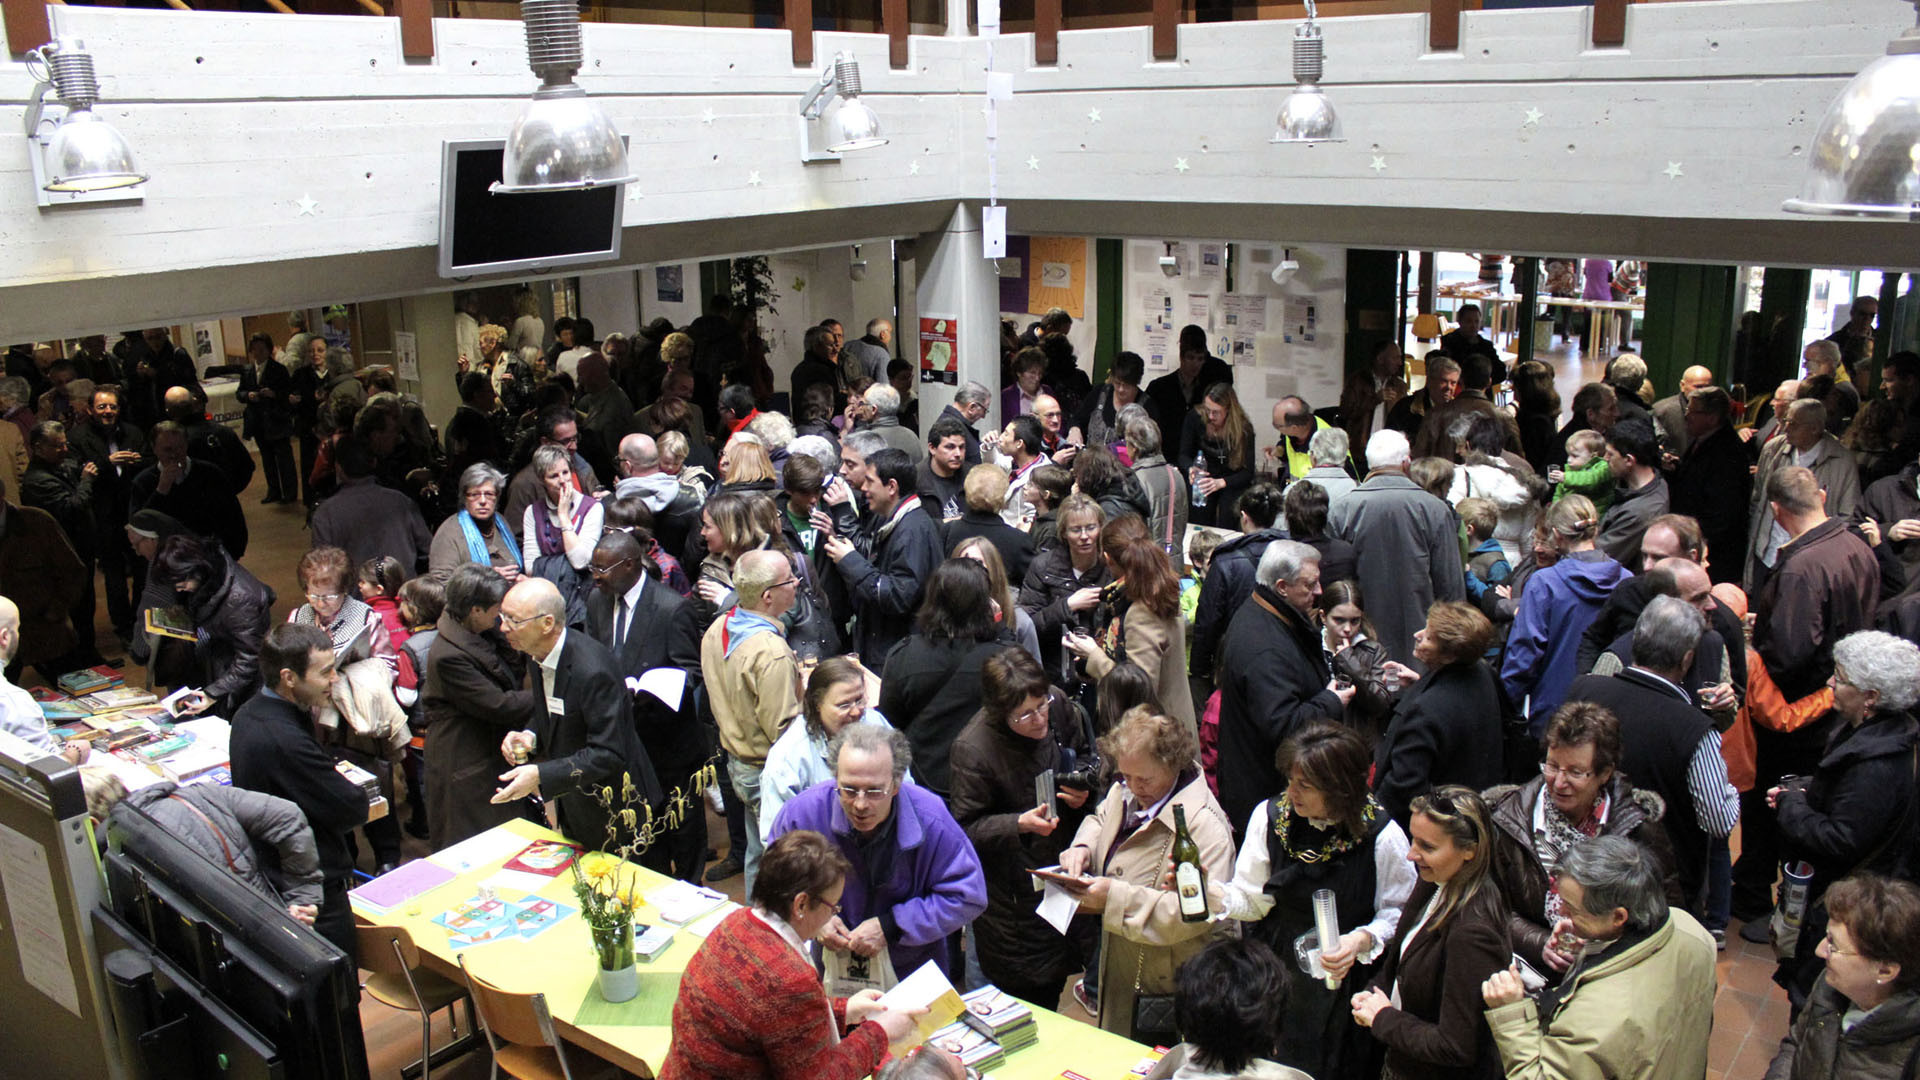 Sion, collège des Creusets lors de l'édition 2012. L'événement attire entre 1'500 et 2'000 personnes chaque année. (Photo: DR)